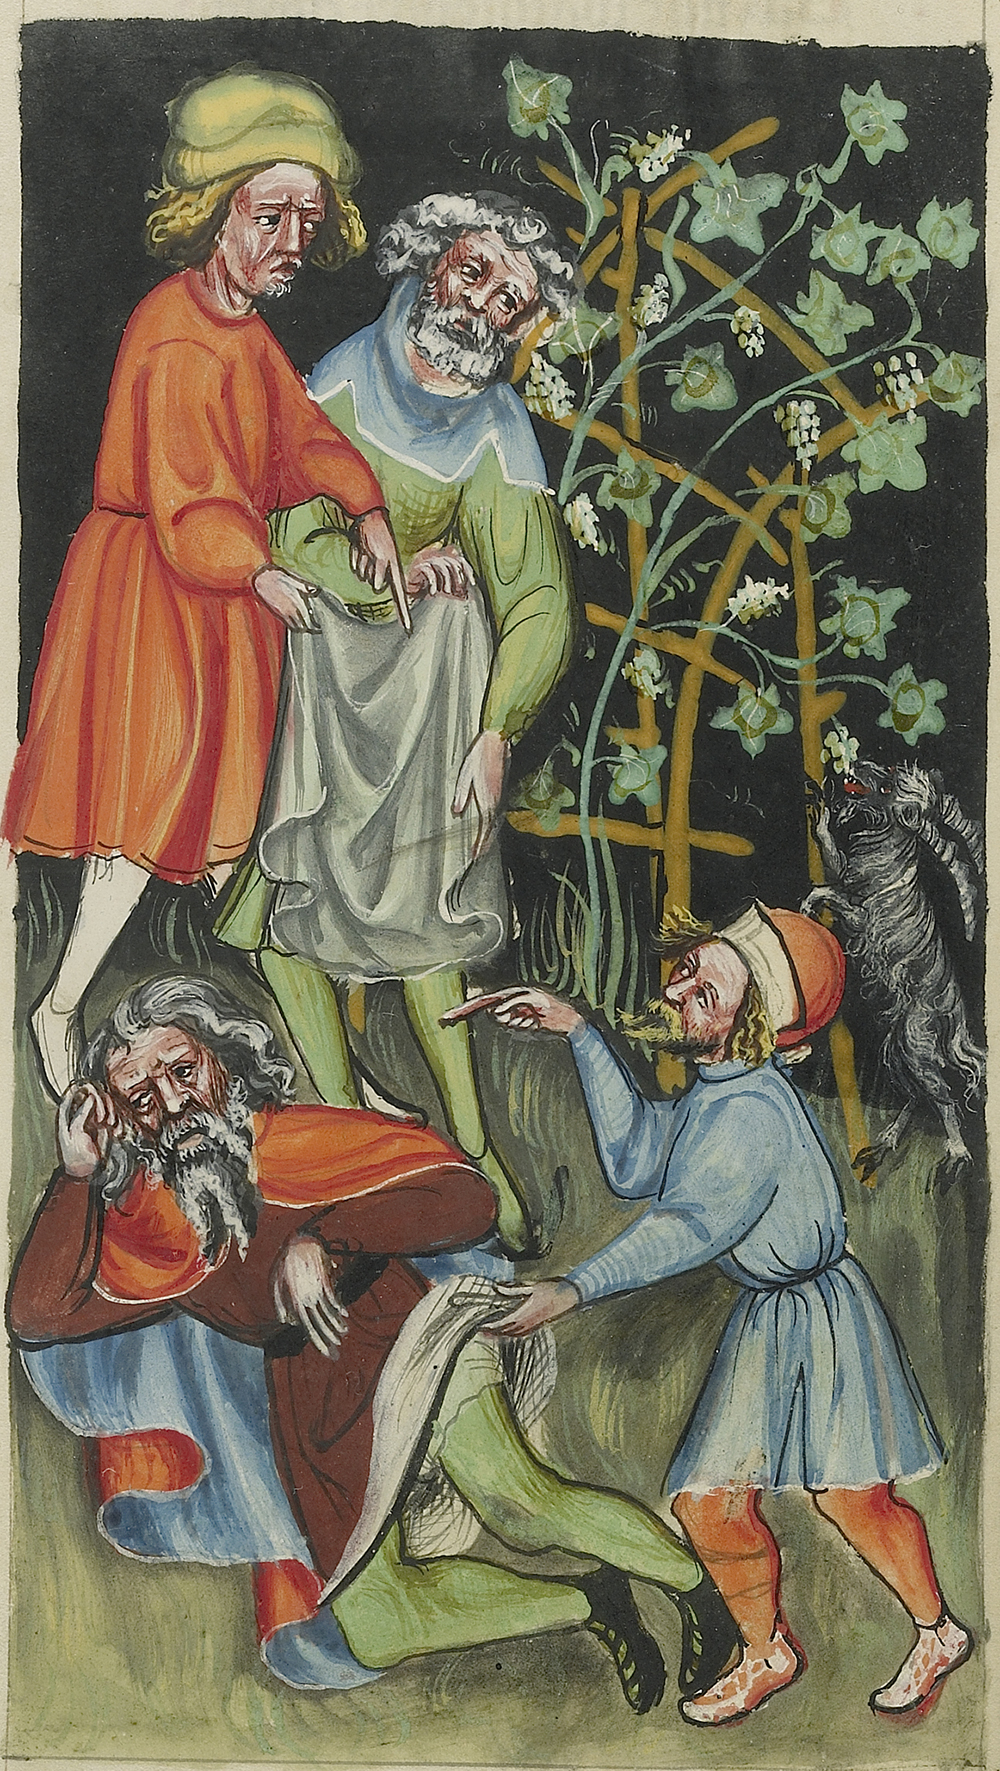 The Drunkenness of Noah, by Rudolf von Ems, c. 1400.